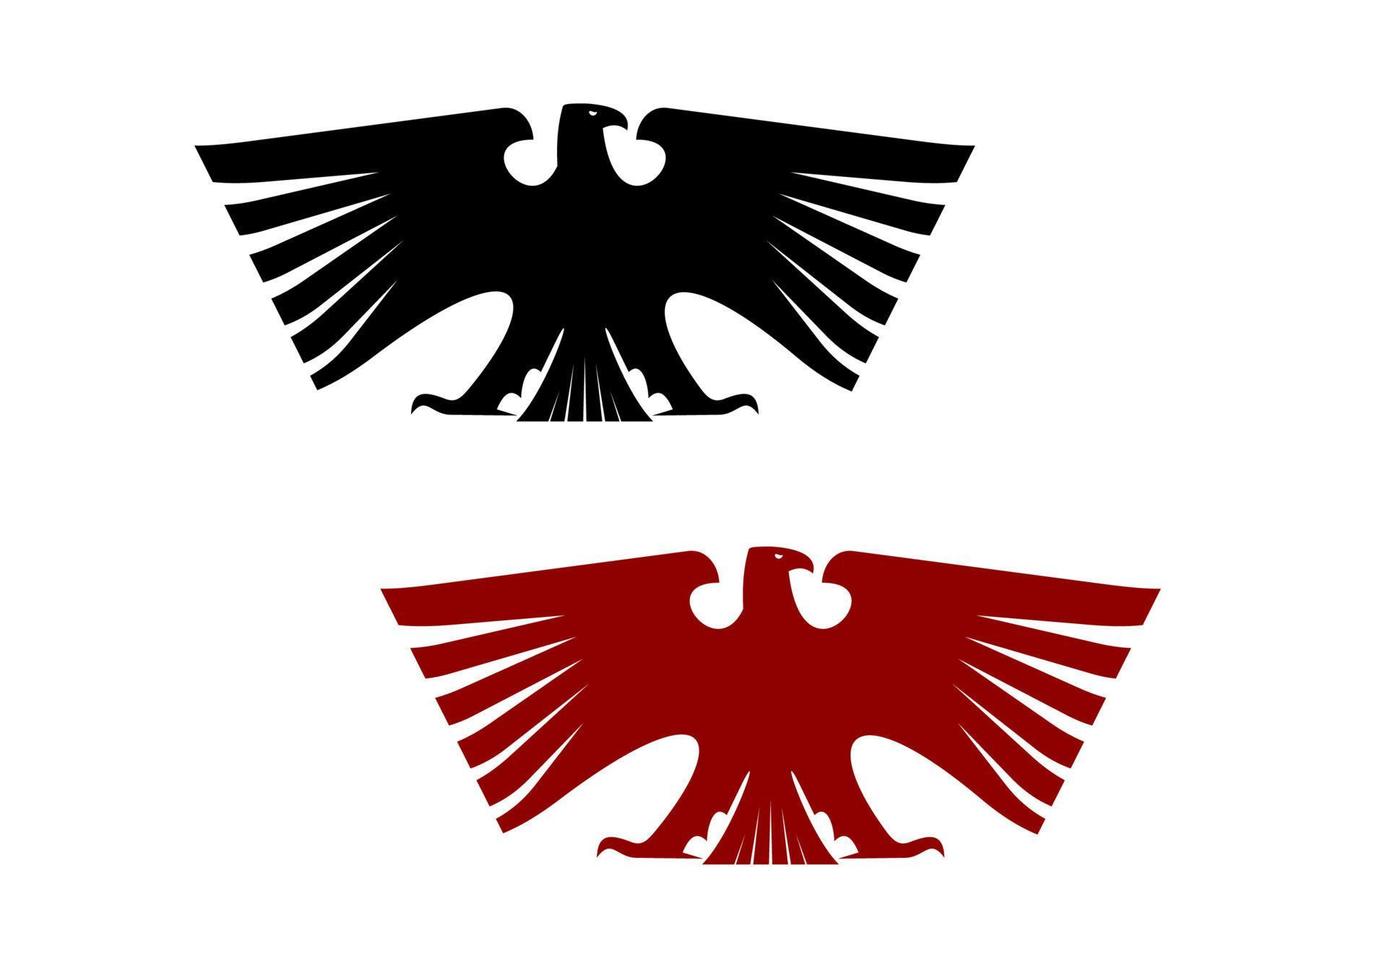 águia heráldica imperial com asas abertas vetor